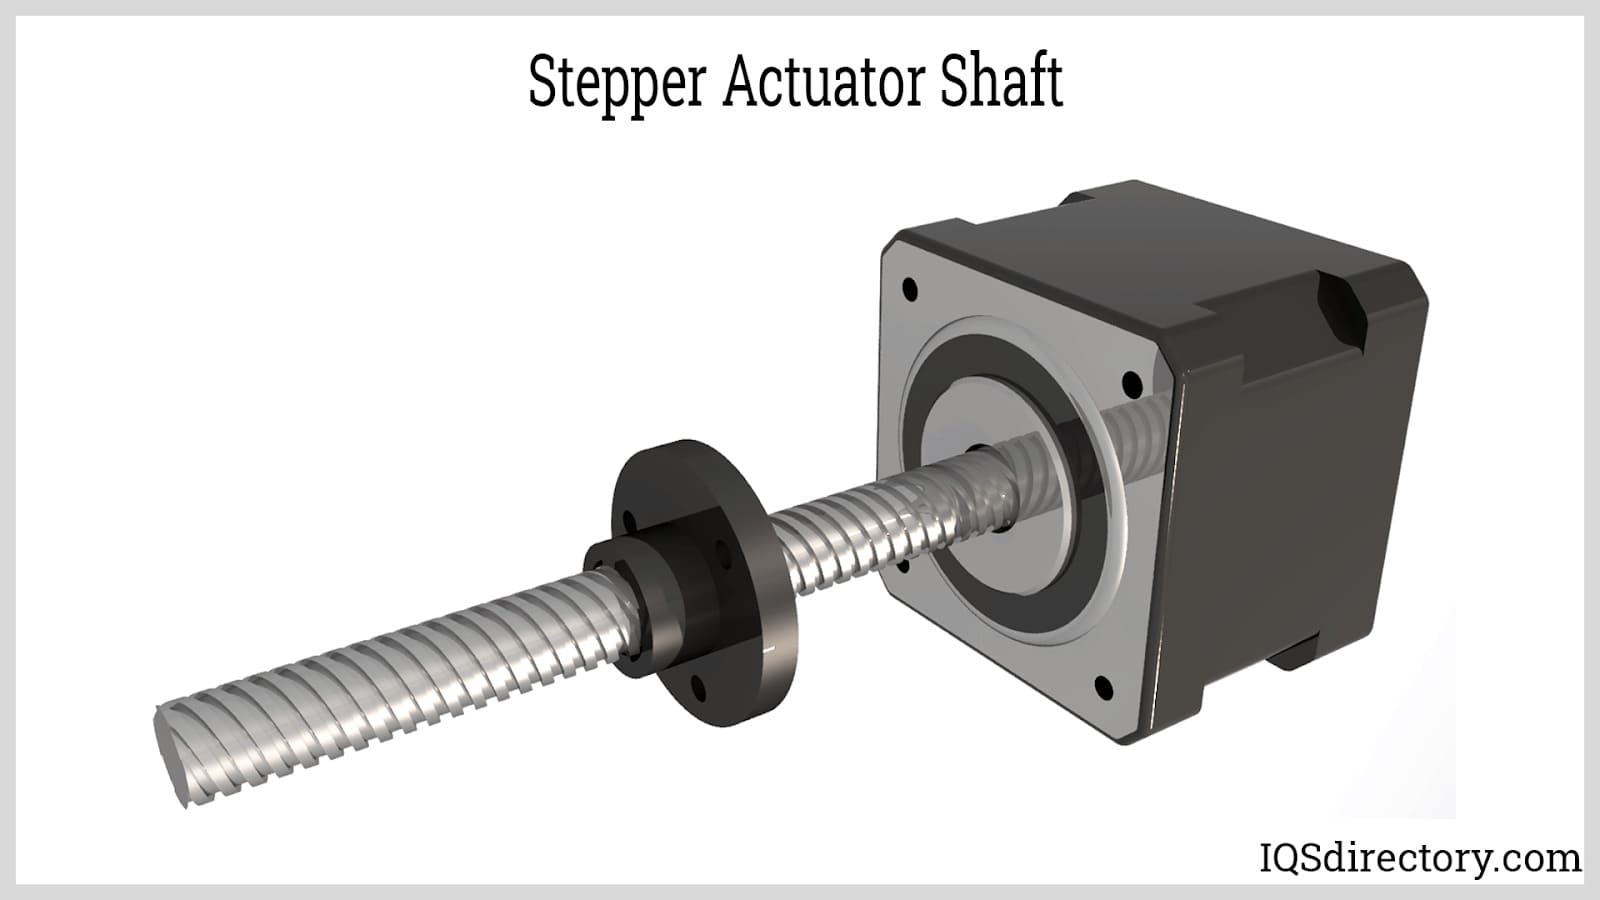 Stepper Actuator Shaft